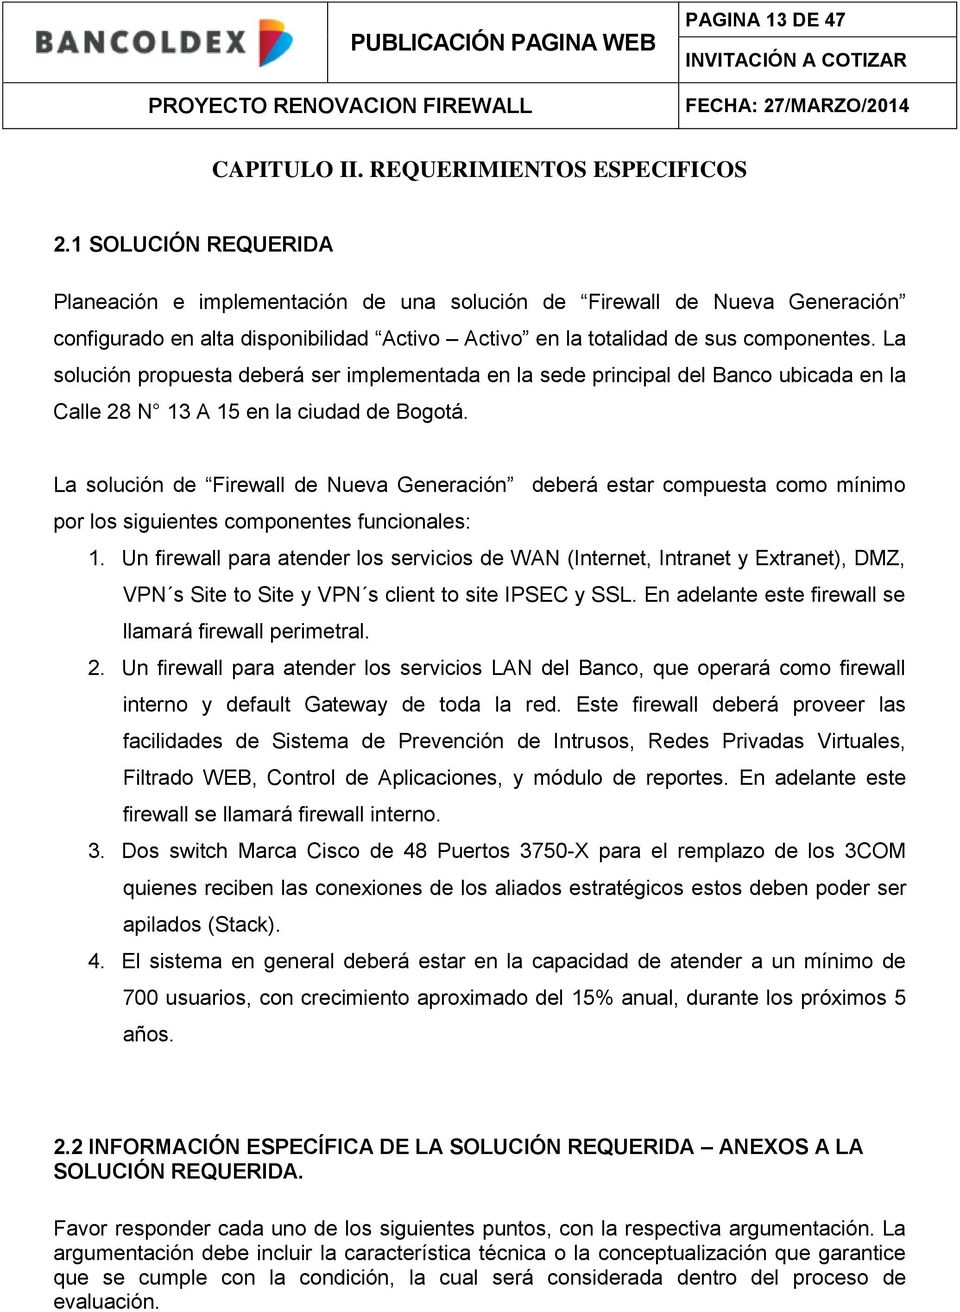 La solución propuesta deberá ser implementada en la sede principal del Banco ubicada en la Calle 28 N 13 A 15 en la ciudad de Bogotá.